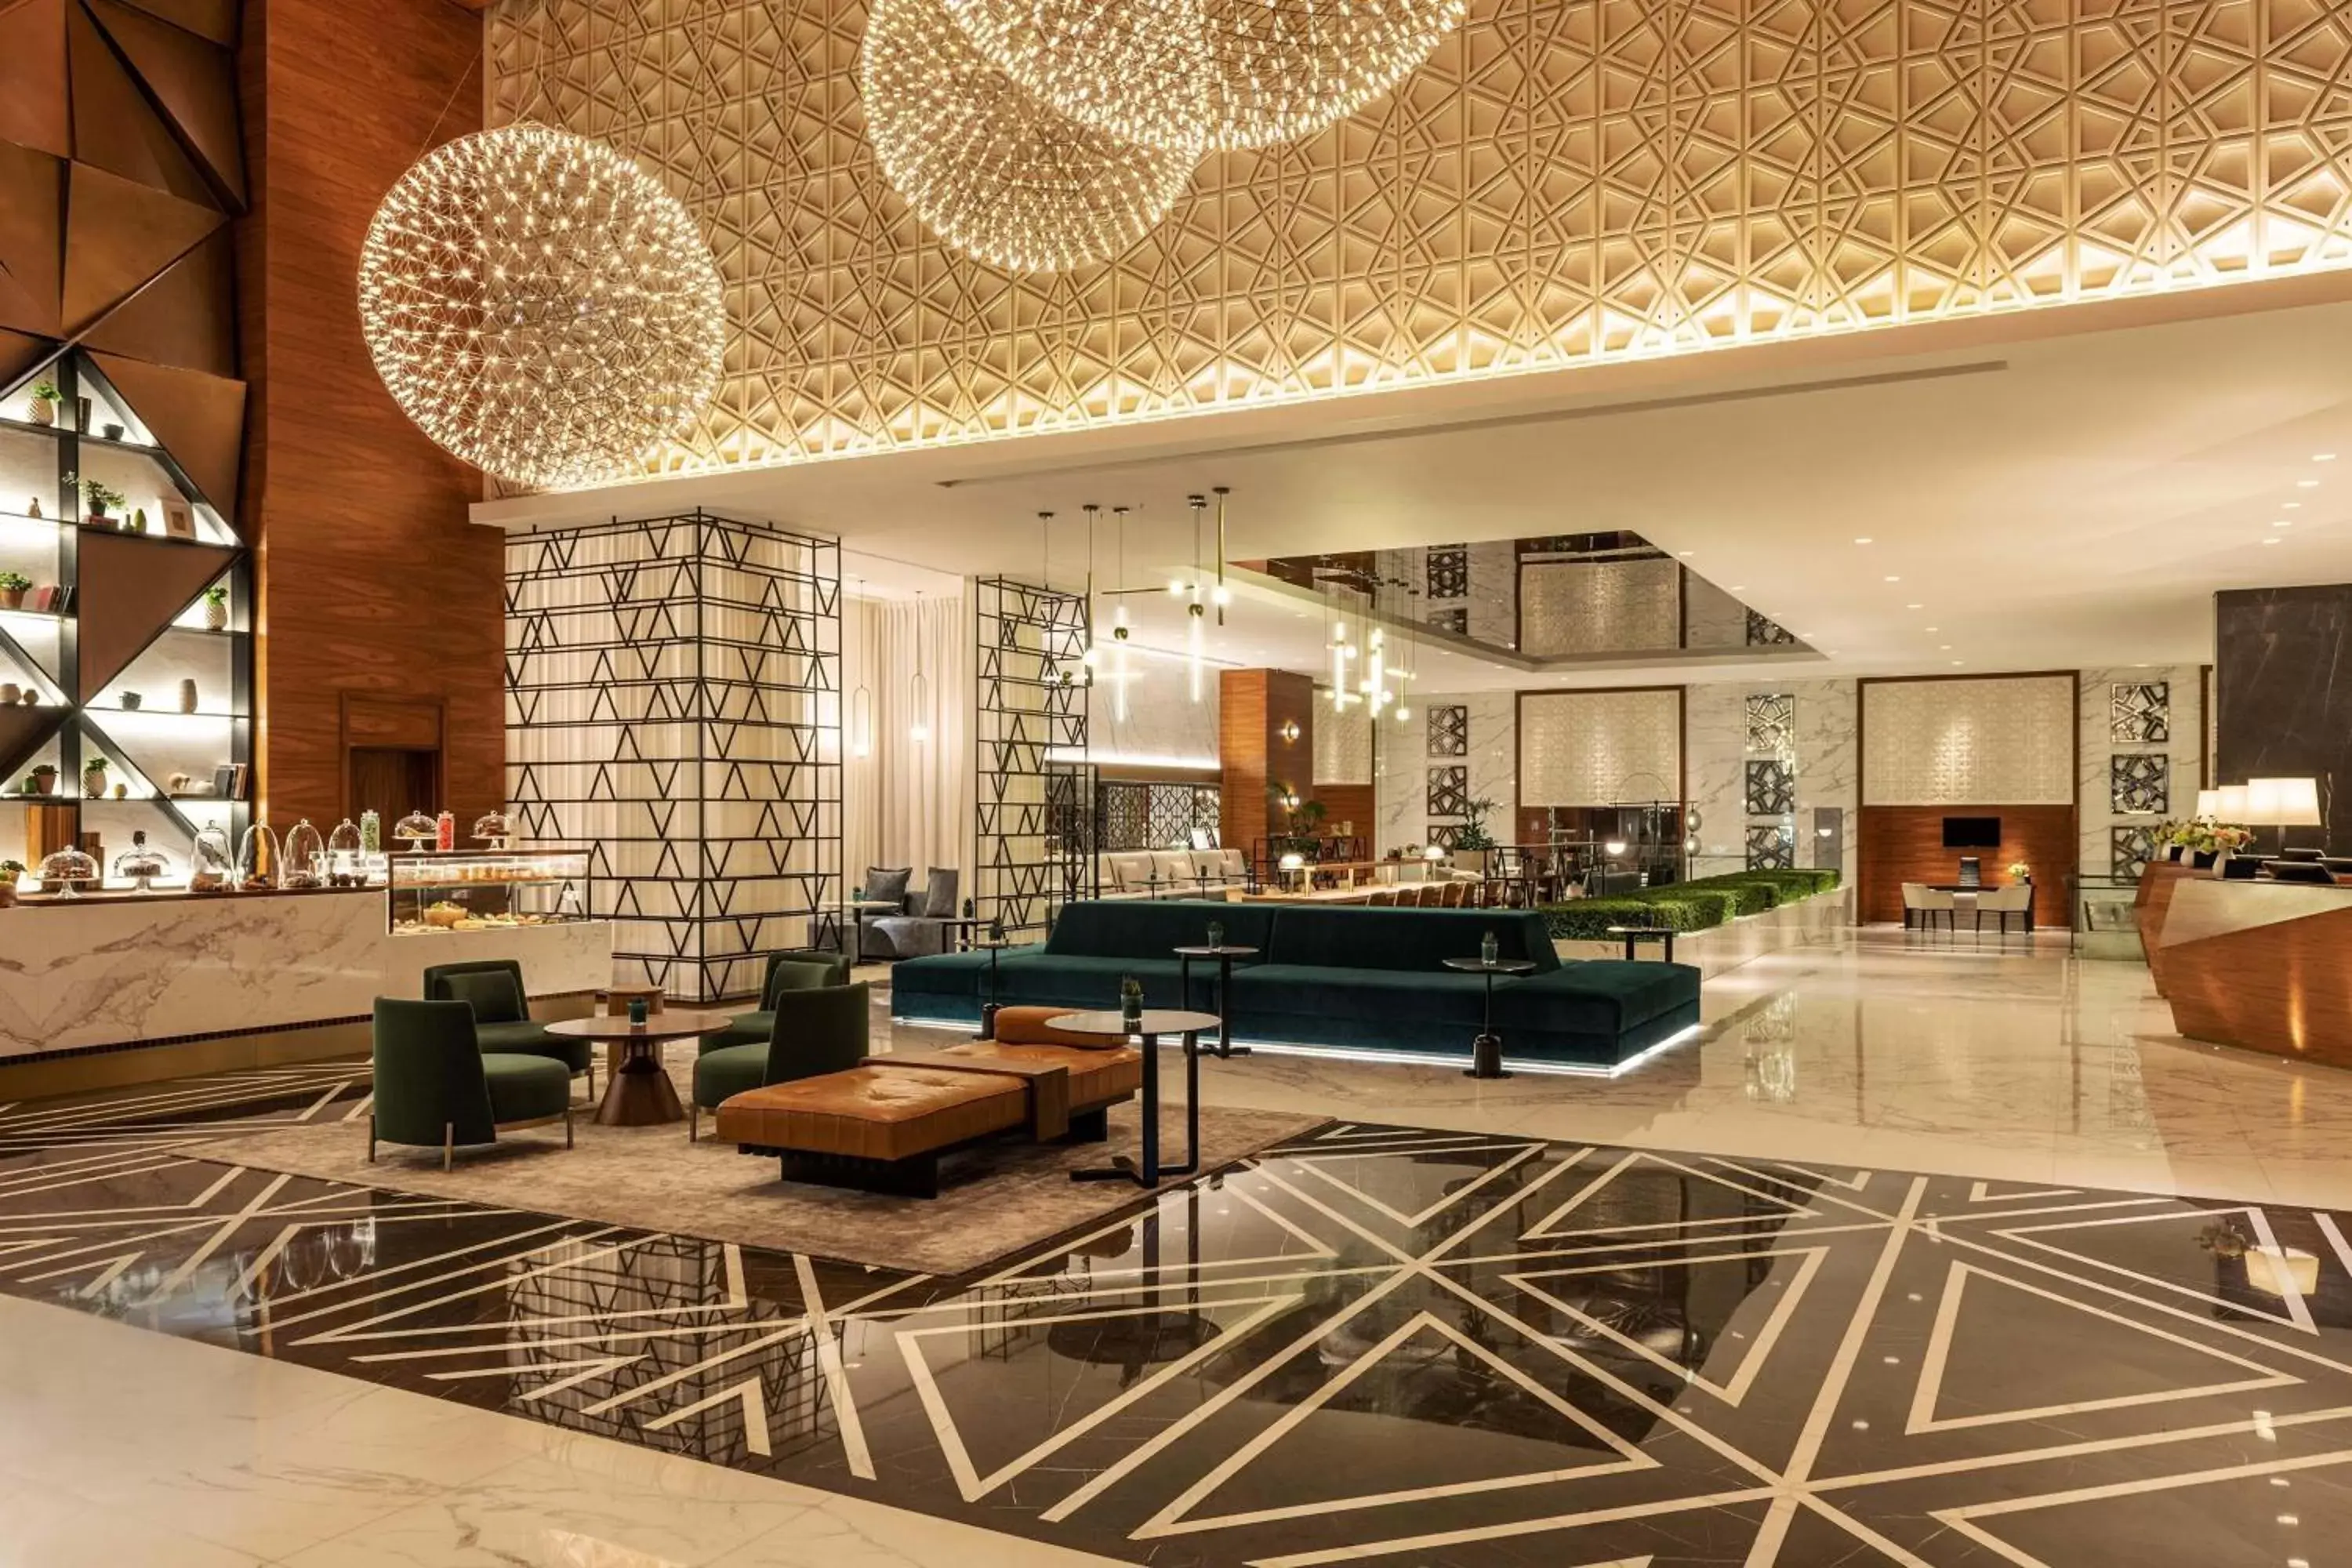 Lobby or reception in Sheraton Grand Hotel, Dubai